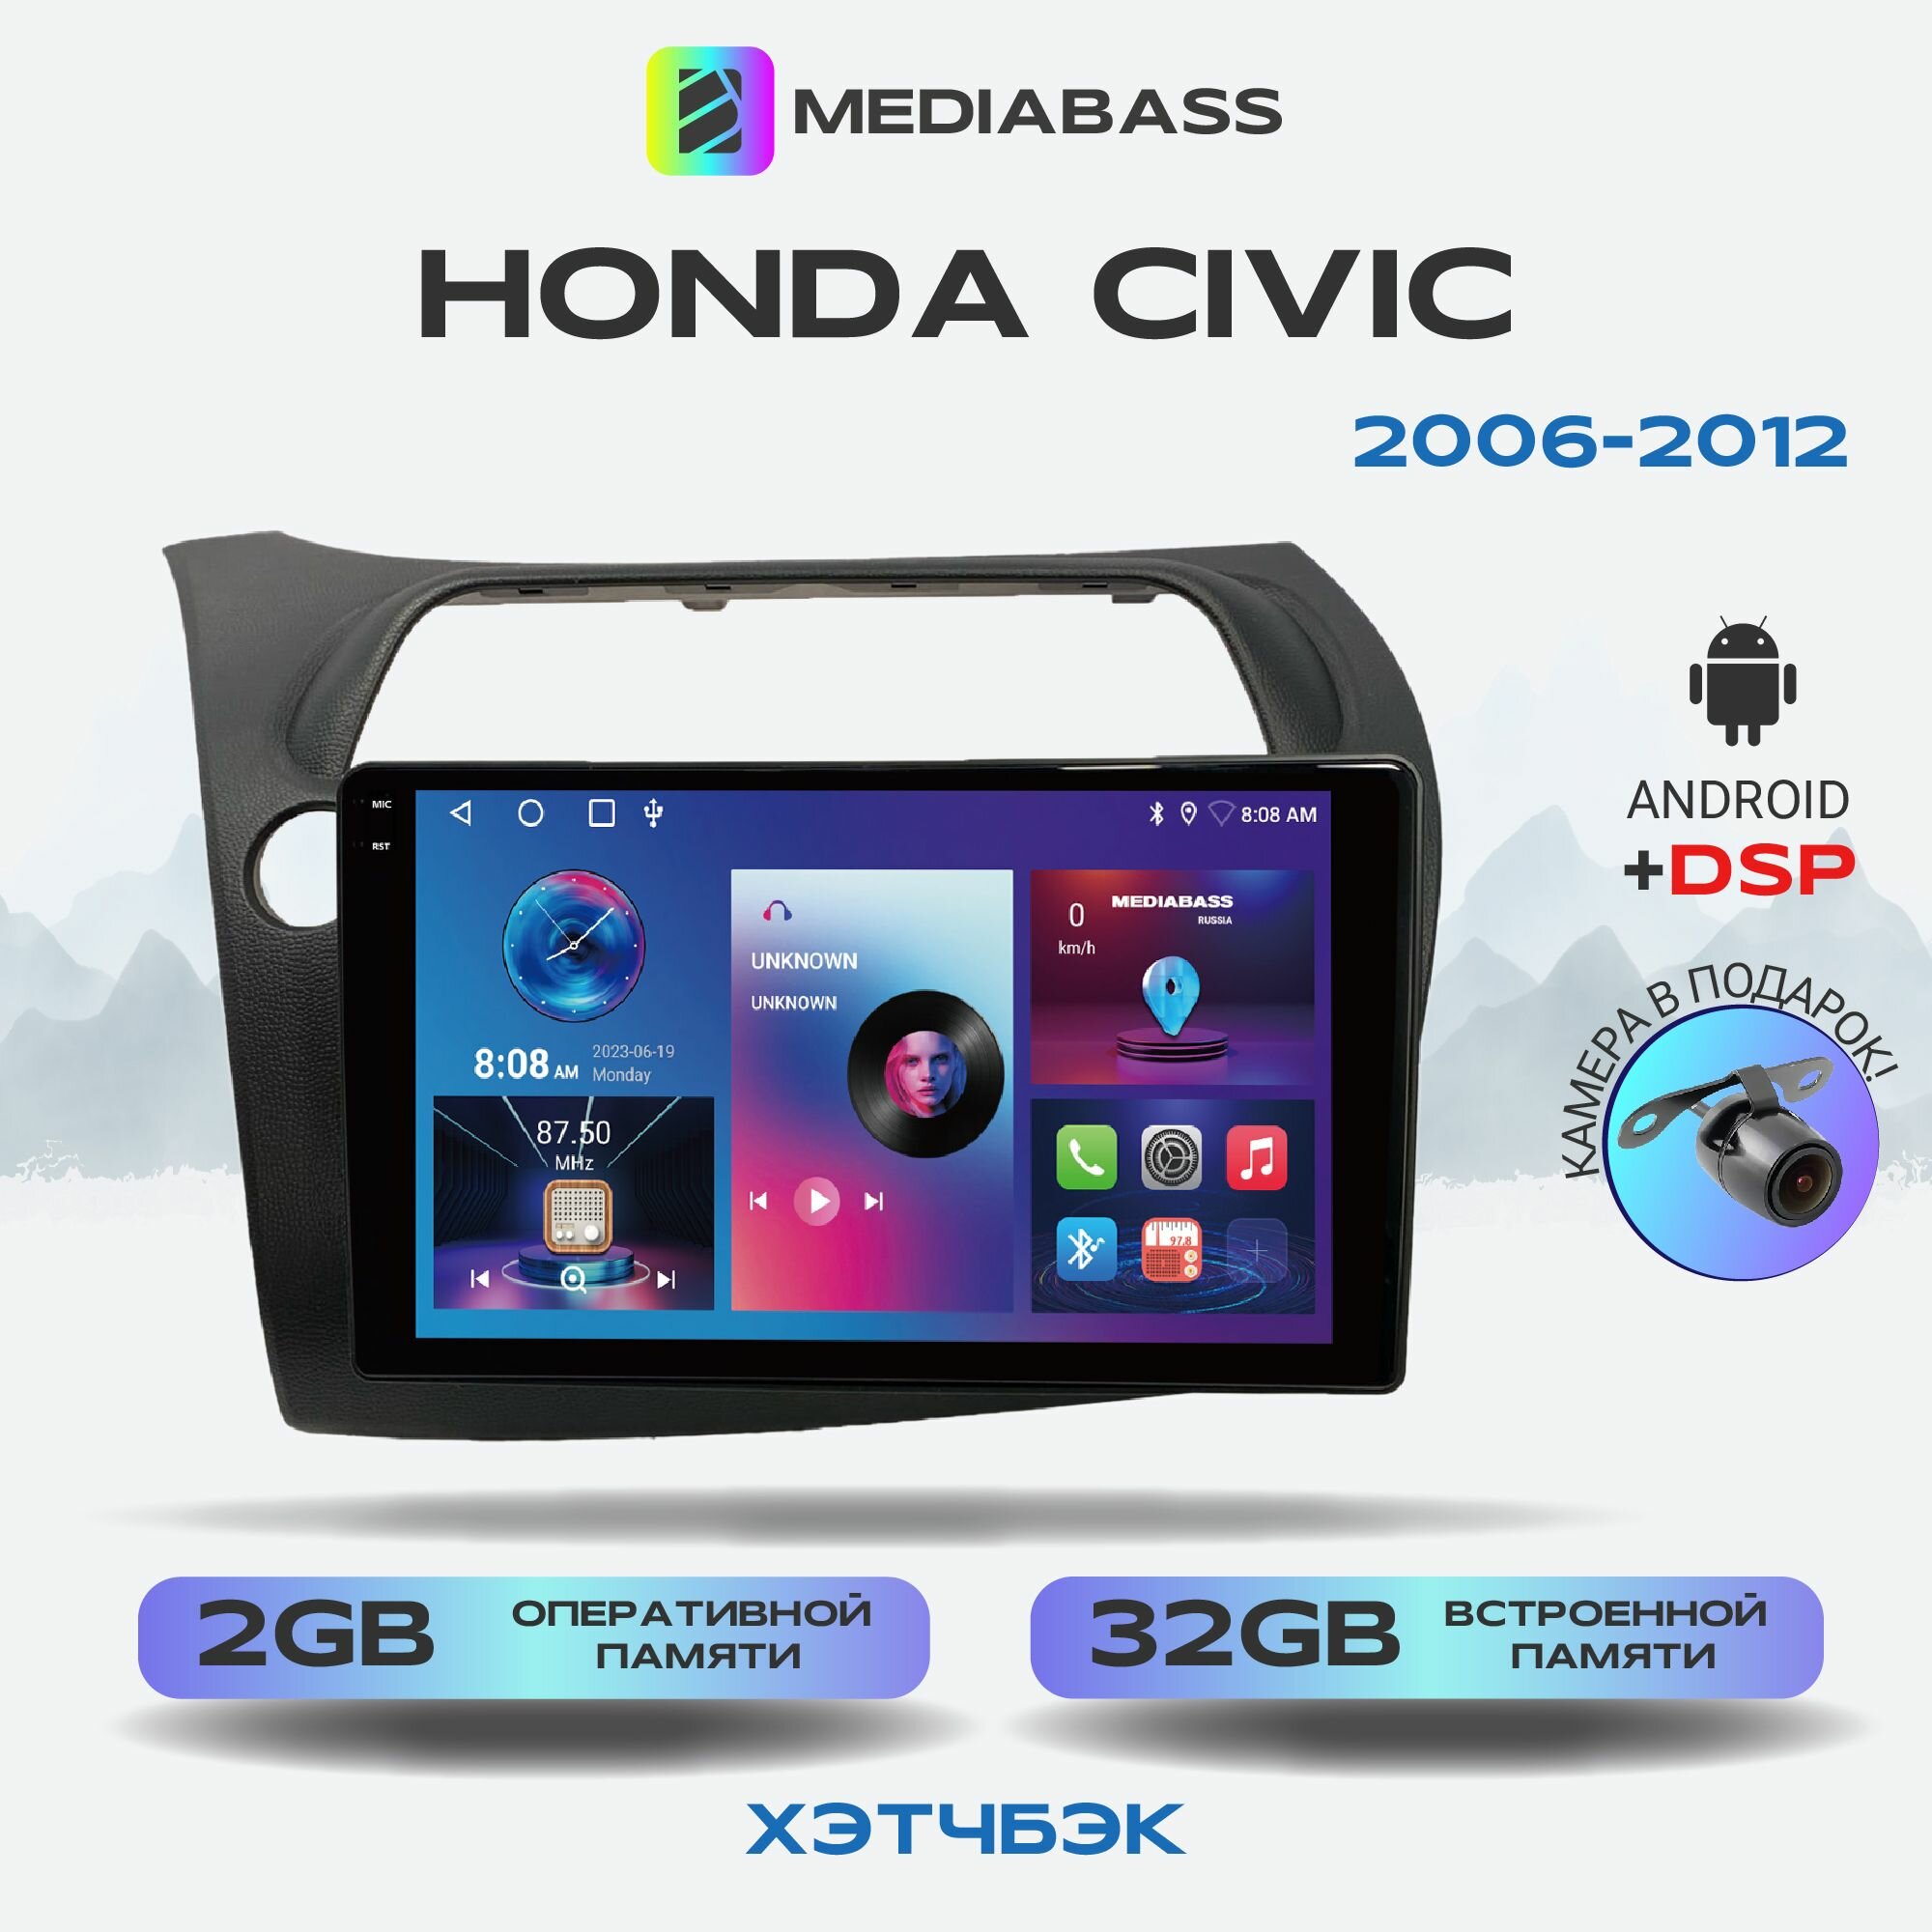 Автомагнитола Mediabass PRO Honda Civic Хонда Цивик хэтчбэк 2006-2012, Android 12, 2/32ГБ, планшет / Хонда Цивик хэтчбэк, 4-ядерный процессор, QLED экран с разрешением 1280*720, DSP, чип-усилитель YD7388